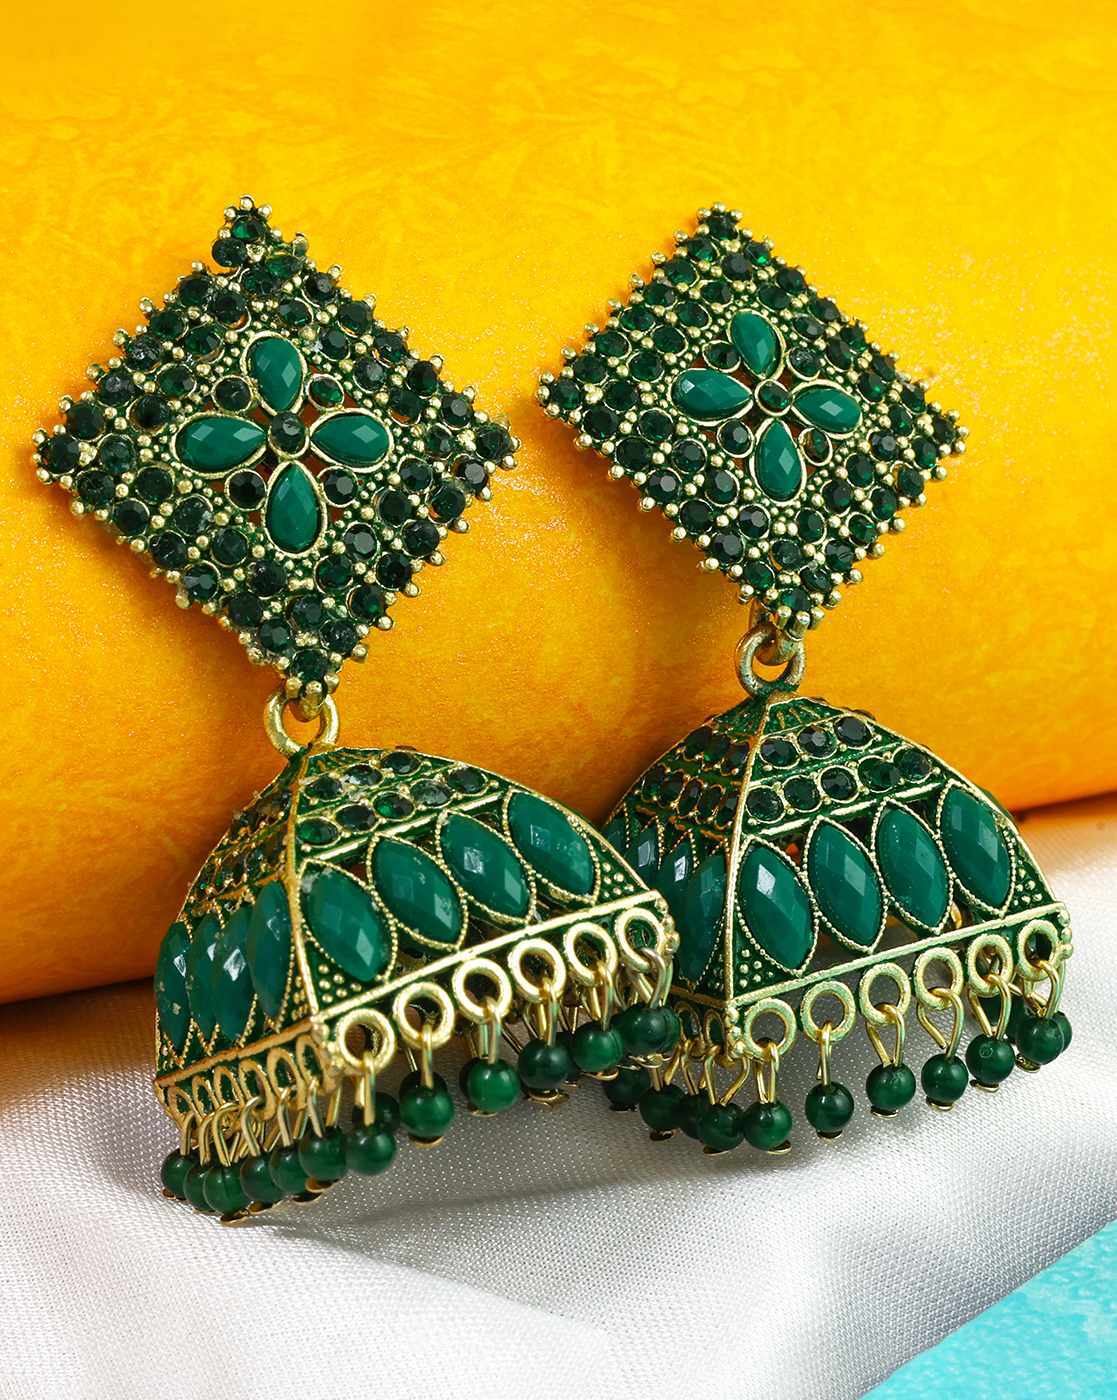 Green earrings - Silvermerc Designs - 4034706